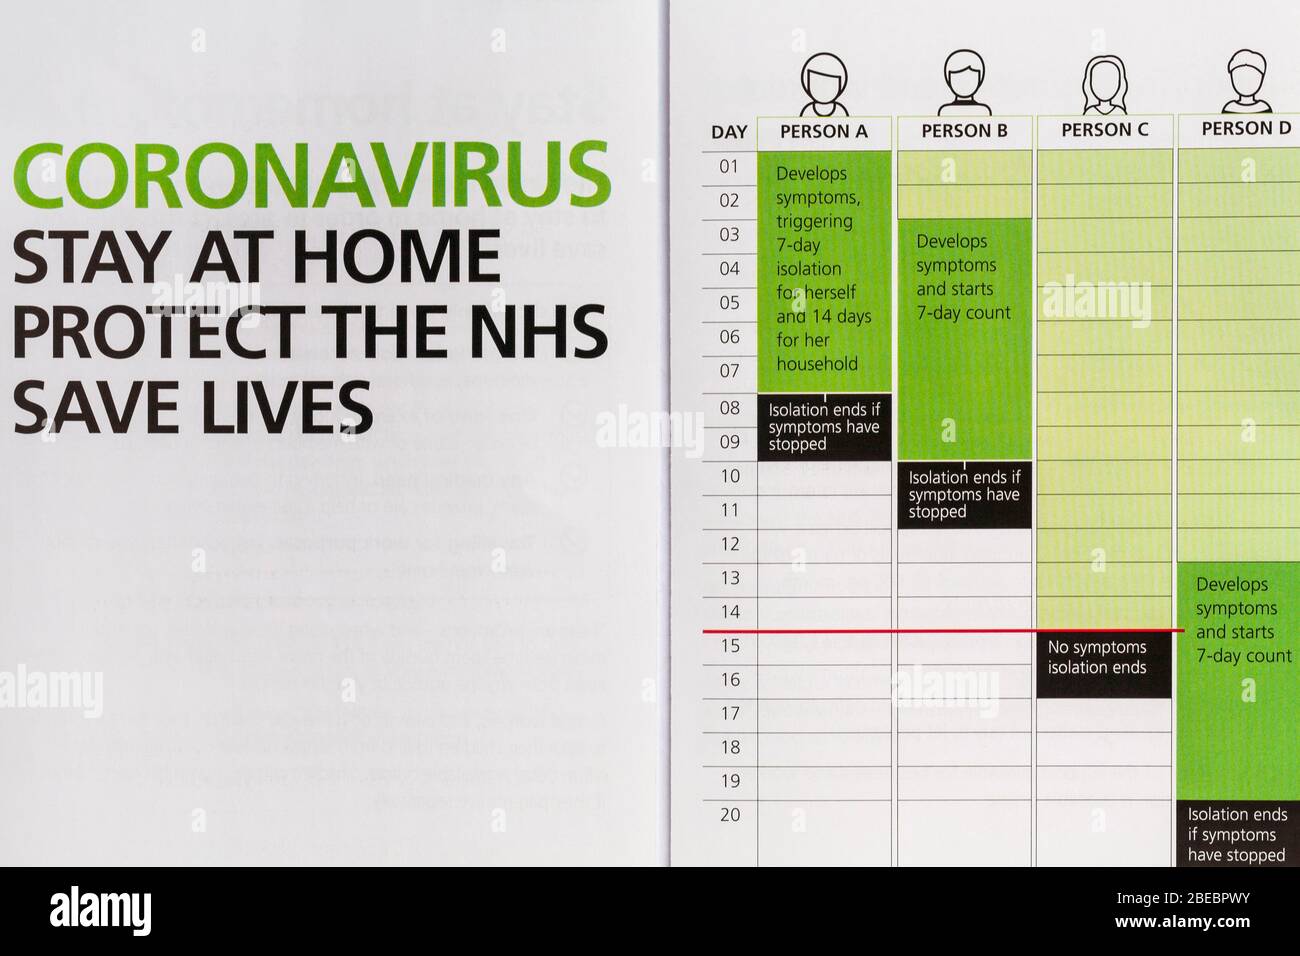 Coronavirus rester à la maison protéger le NHS sauver des vies détails dans la brochure accompagnant la lettre du gouvernement britannique, Boris Johnson à tous les ménages britanniques Banque D'Images